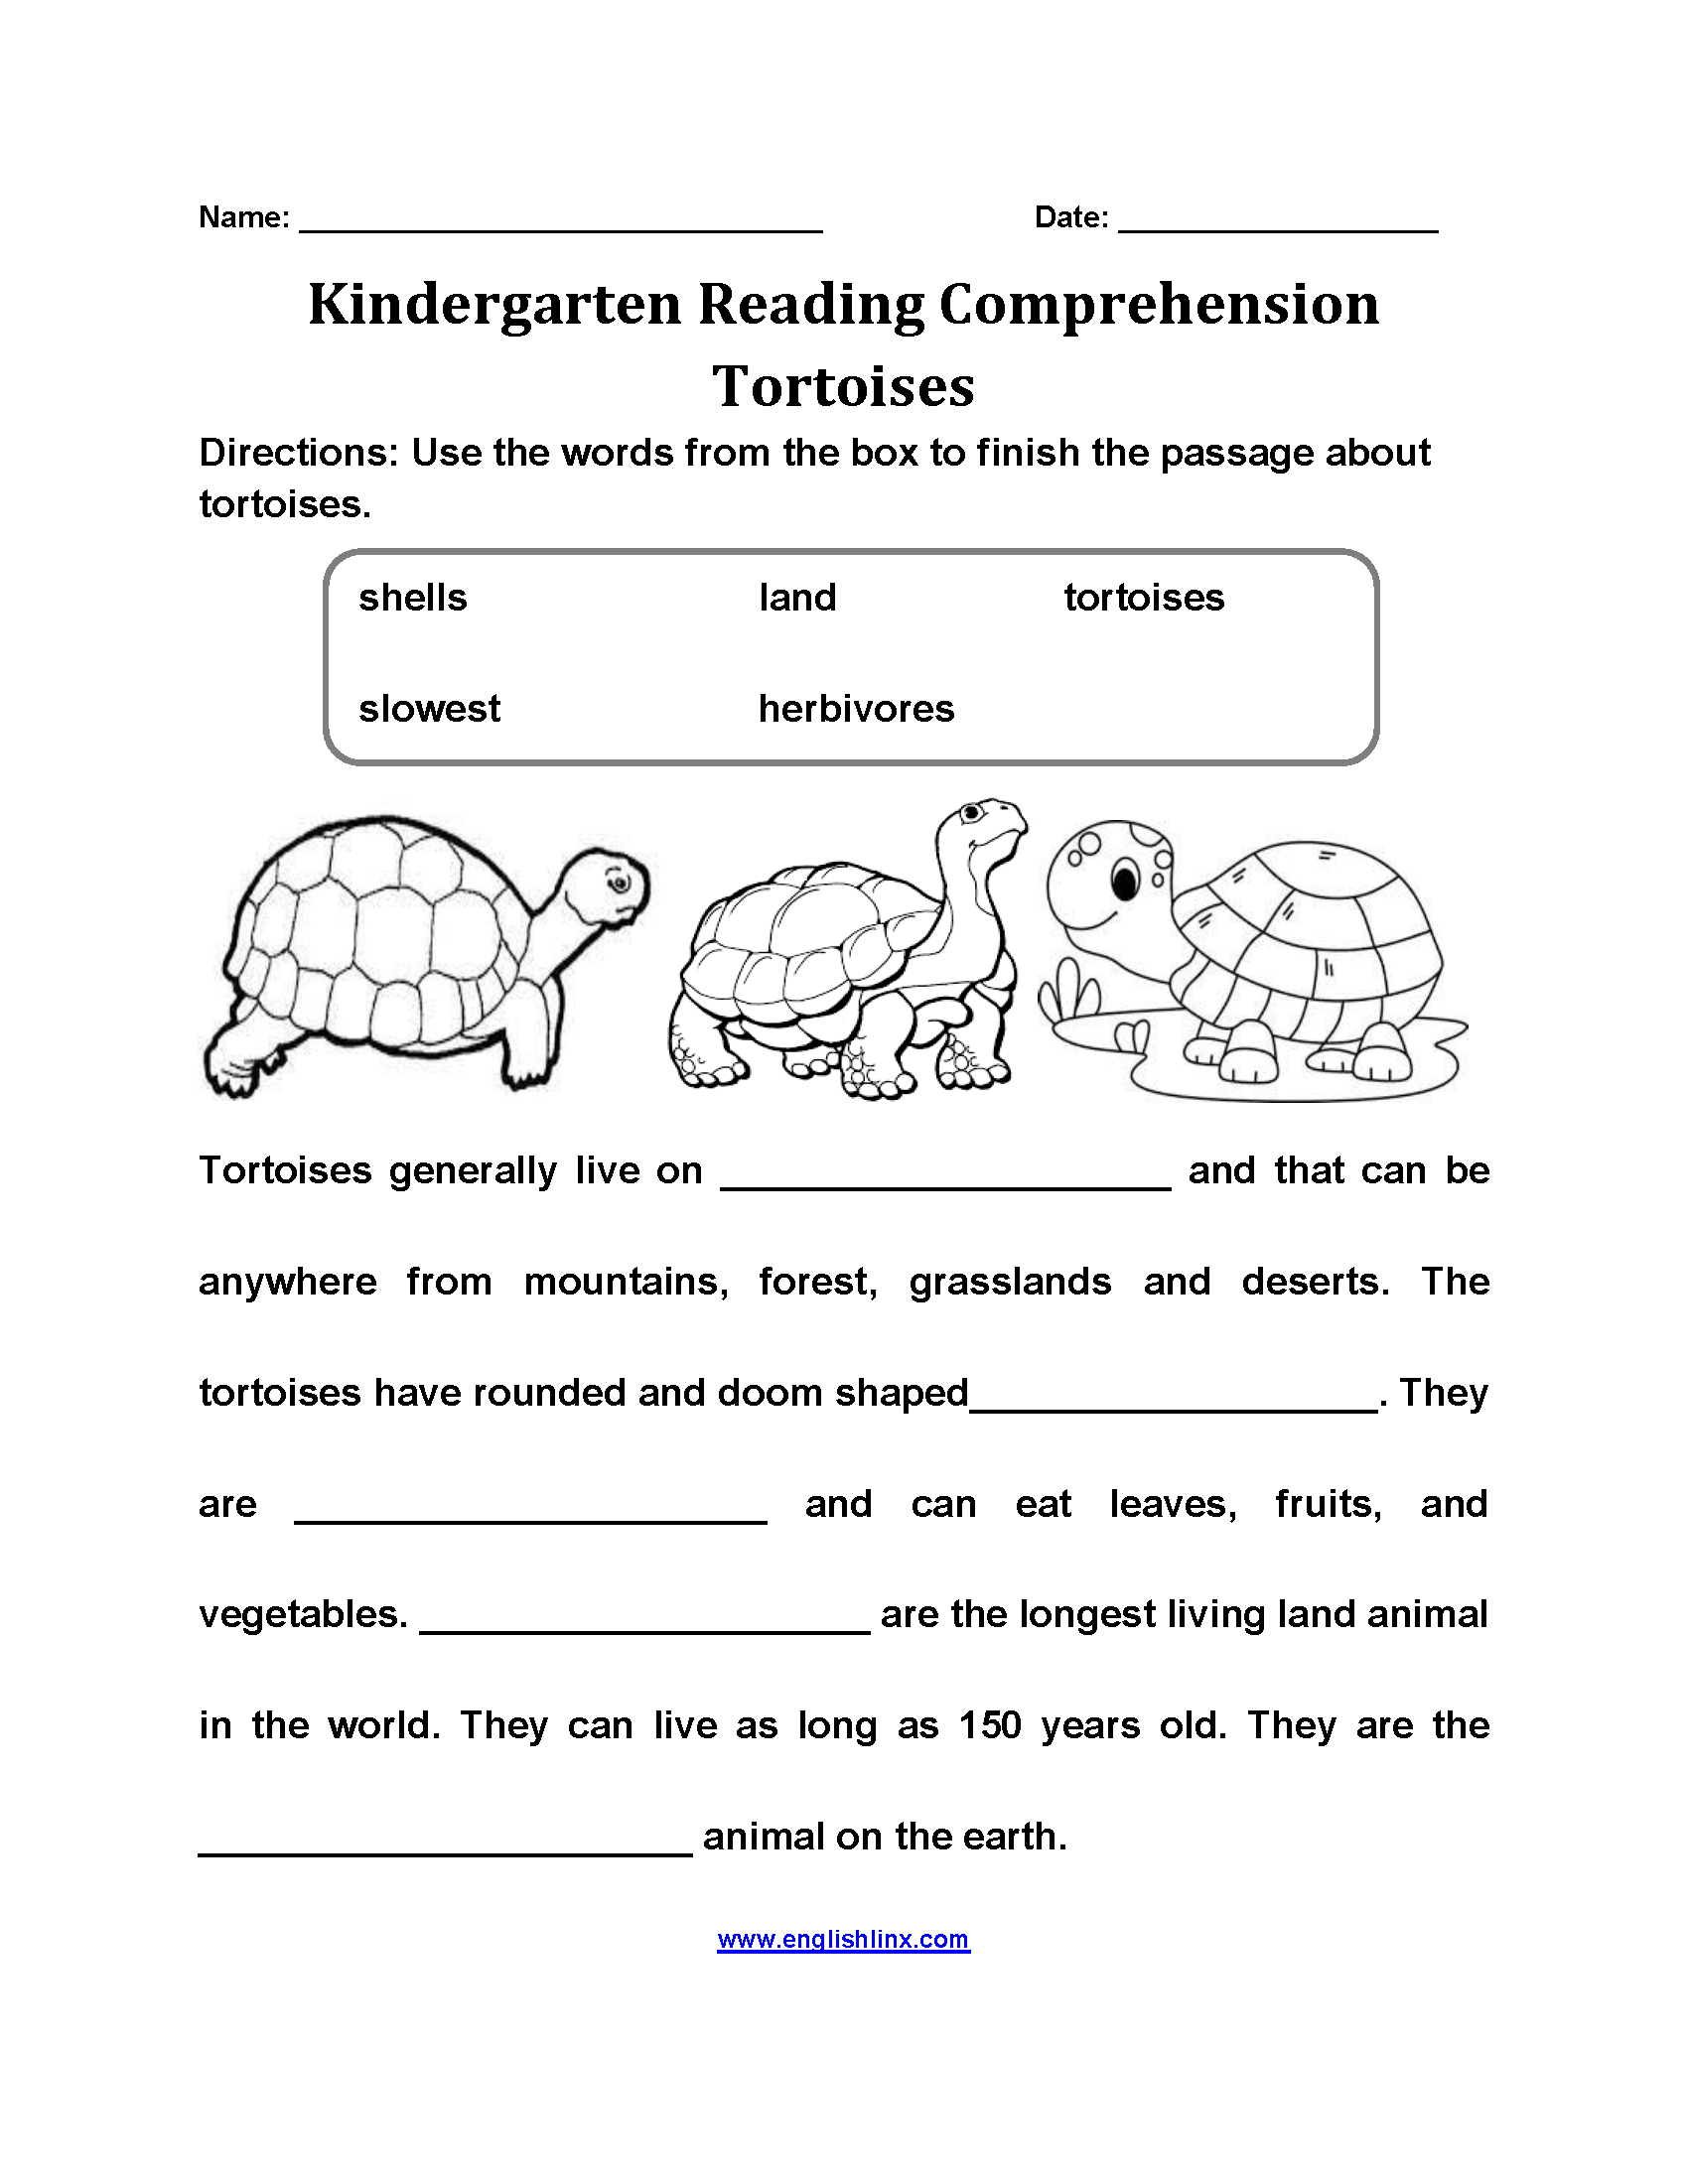 Tortoises Kindergarten Reading Comprehension Worksheets